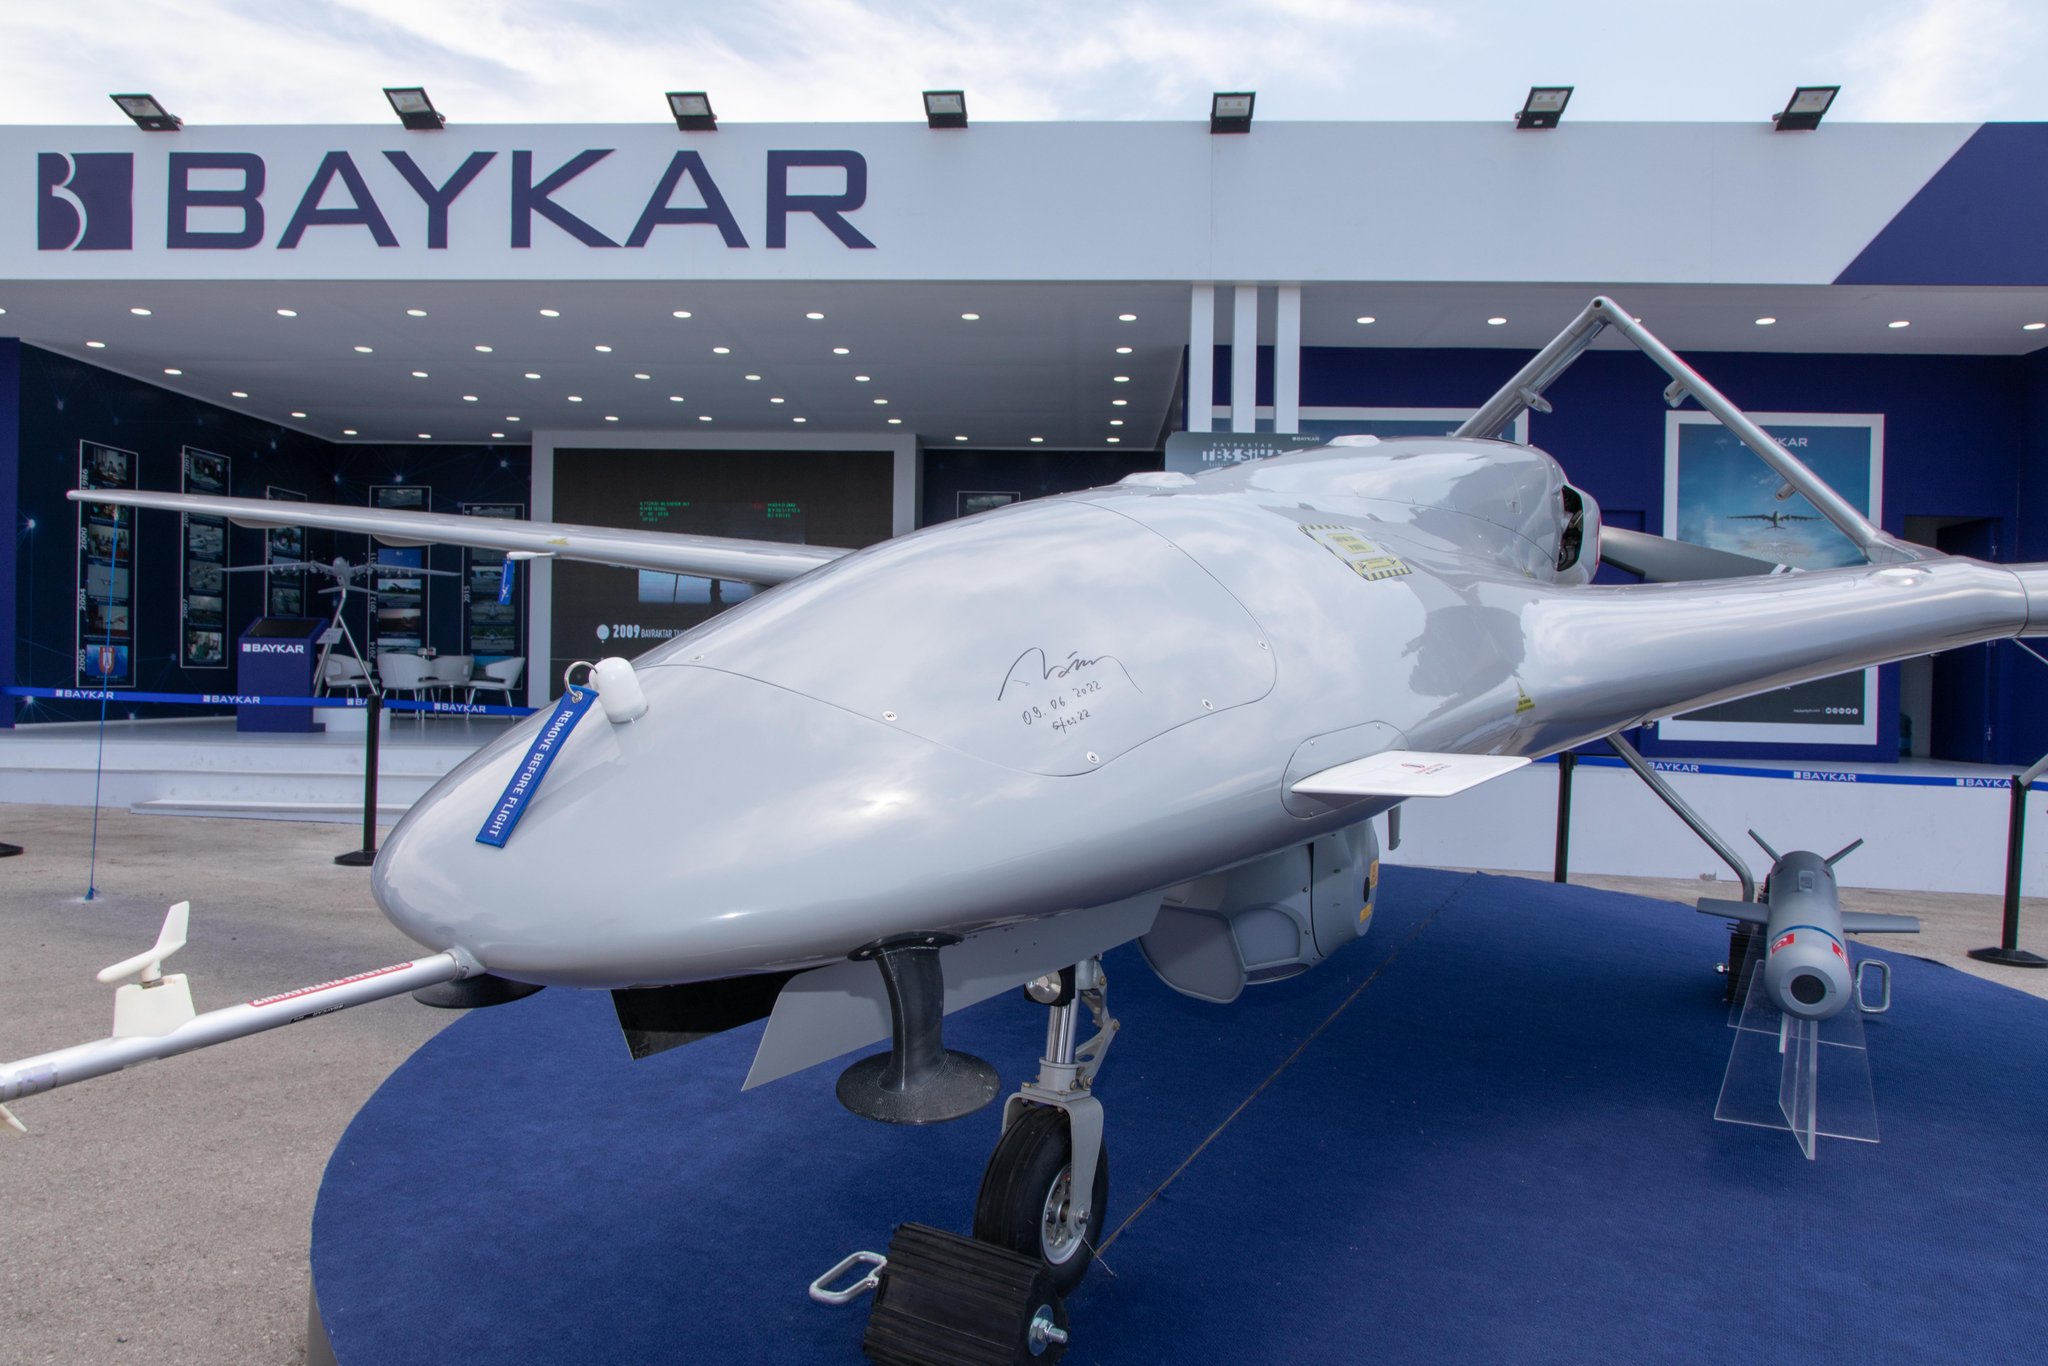 Турецька компанія Baykar створила в Україні компанію з виробництва безпілотників Bayraktar, під завод придбано ділянку — посол